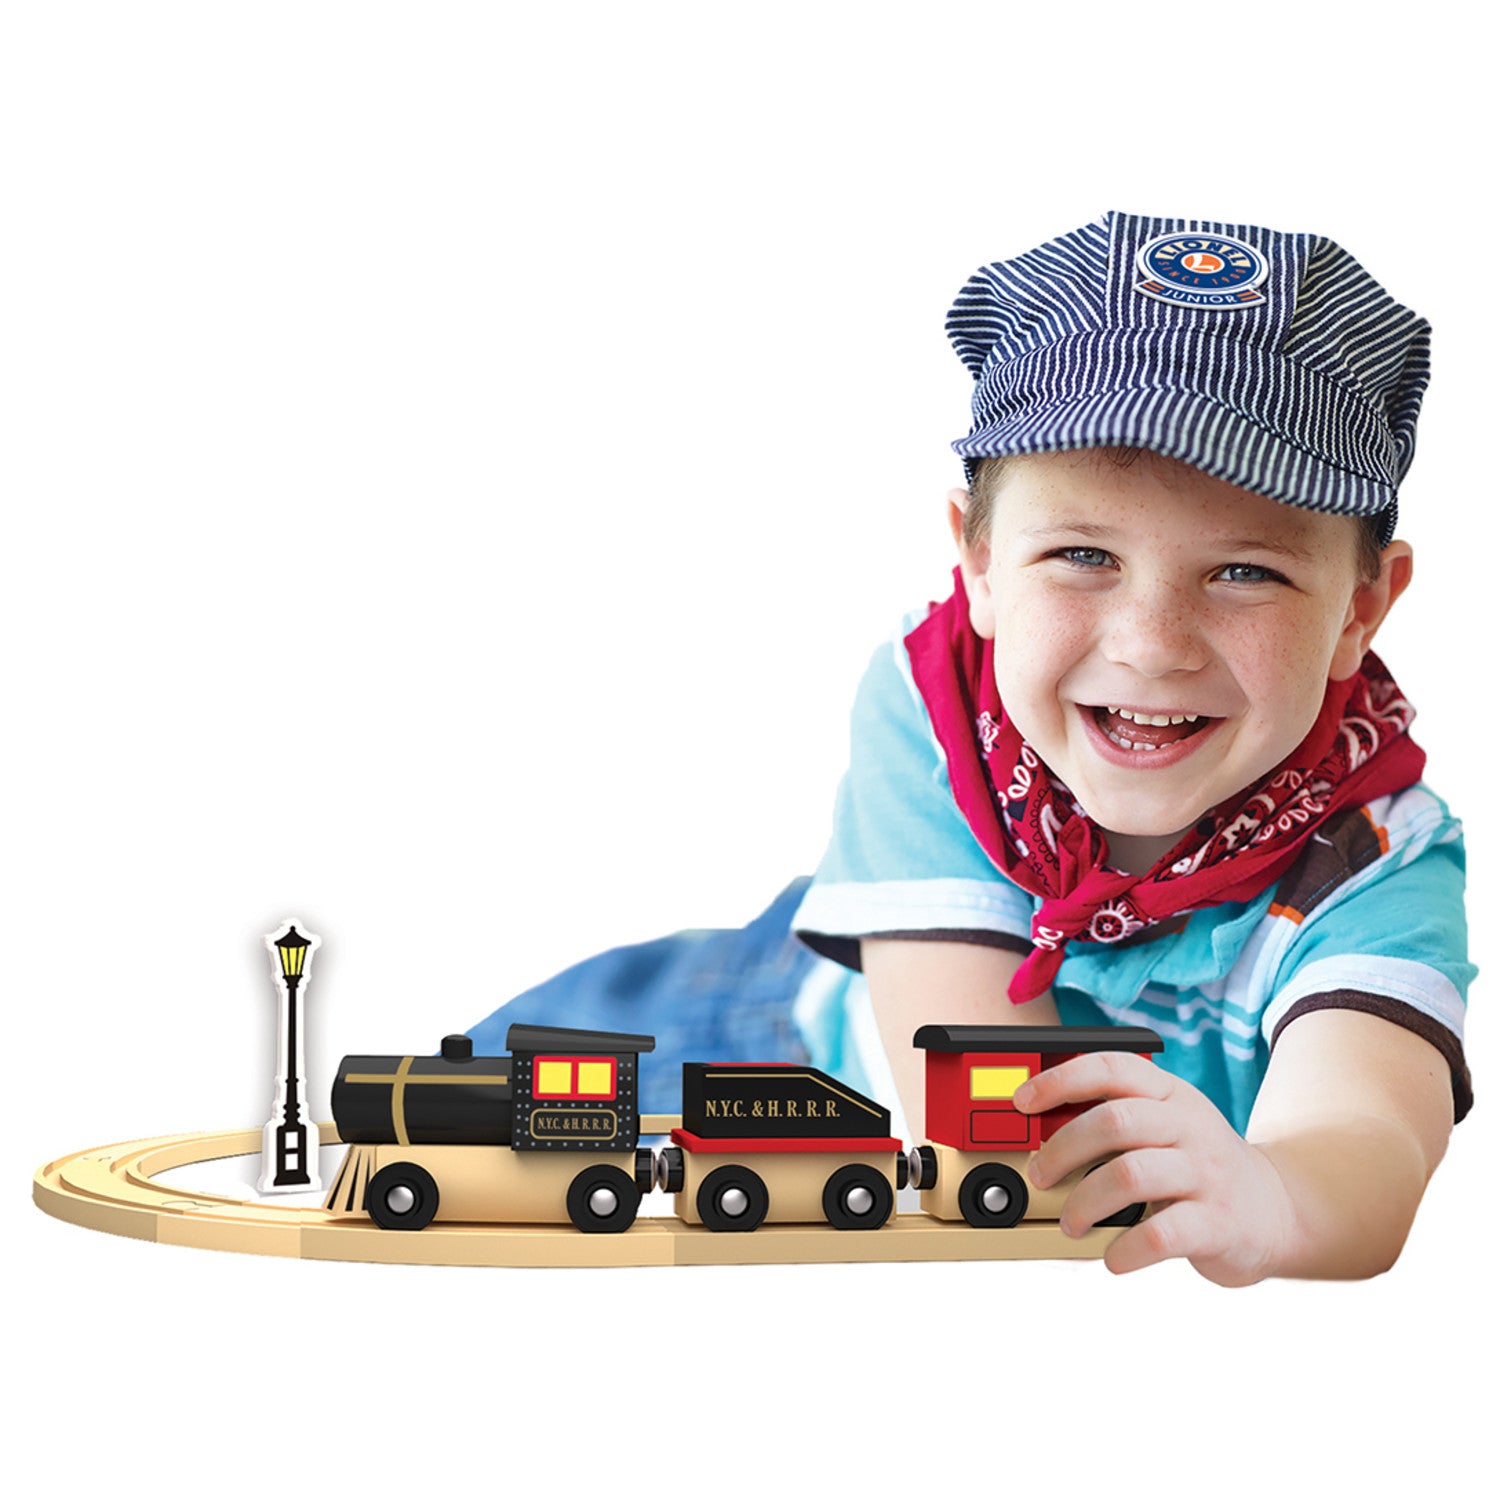 Lionel - Original Steam Engine Toy Train Set